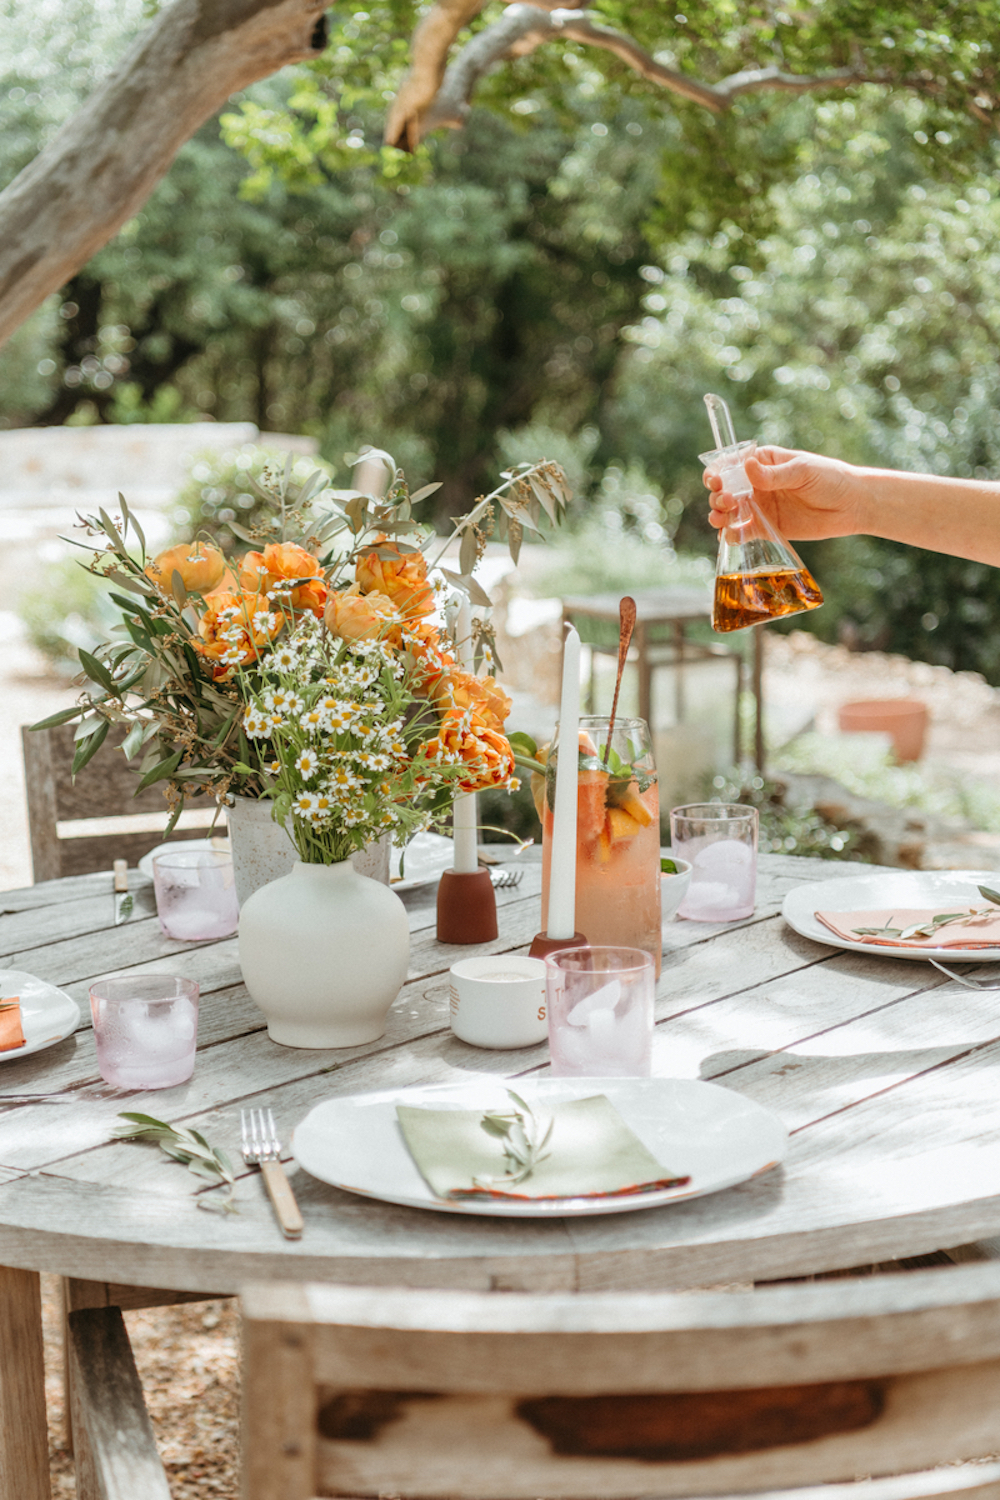 میز ناهار خوری آفتابی در فضای باز با بشقاب های سفید، دستمال های کتان خاکستری، ظروف تخت ساده، و چیدمانی از اکالیپتوس، گل های نارنجی، و گل های مروارید.